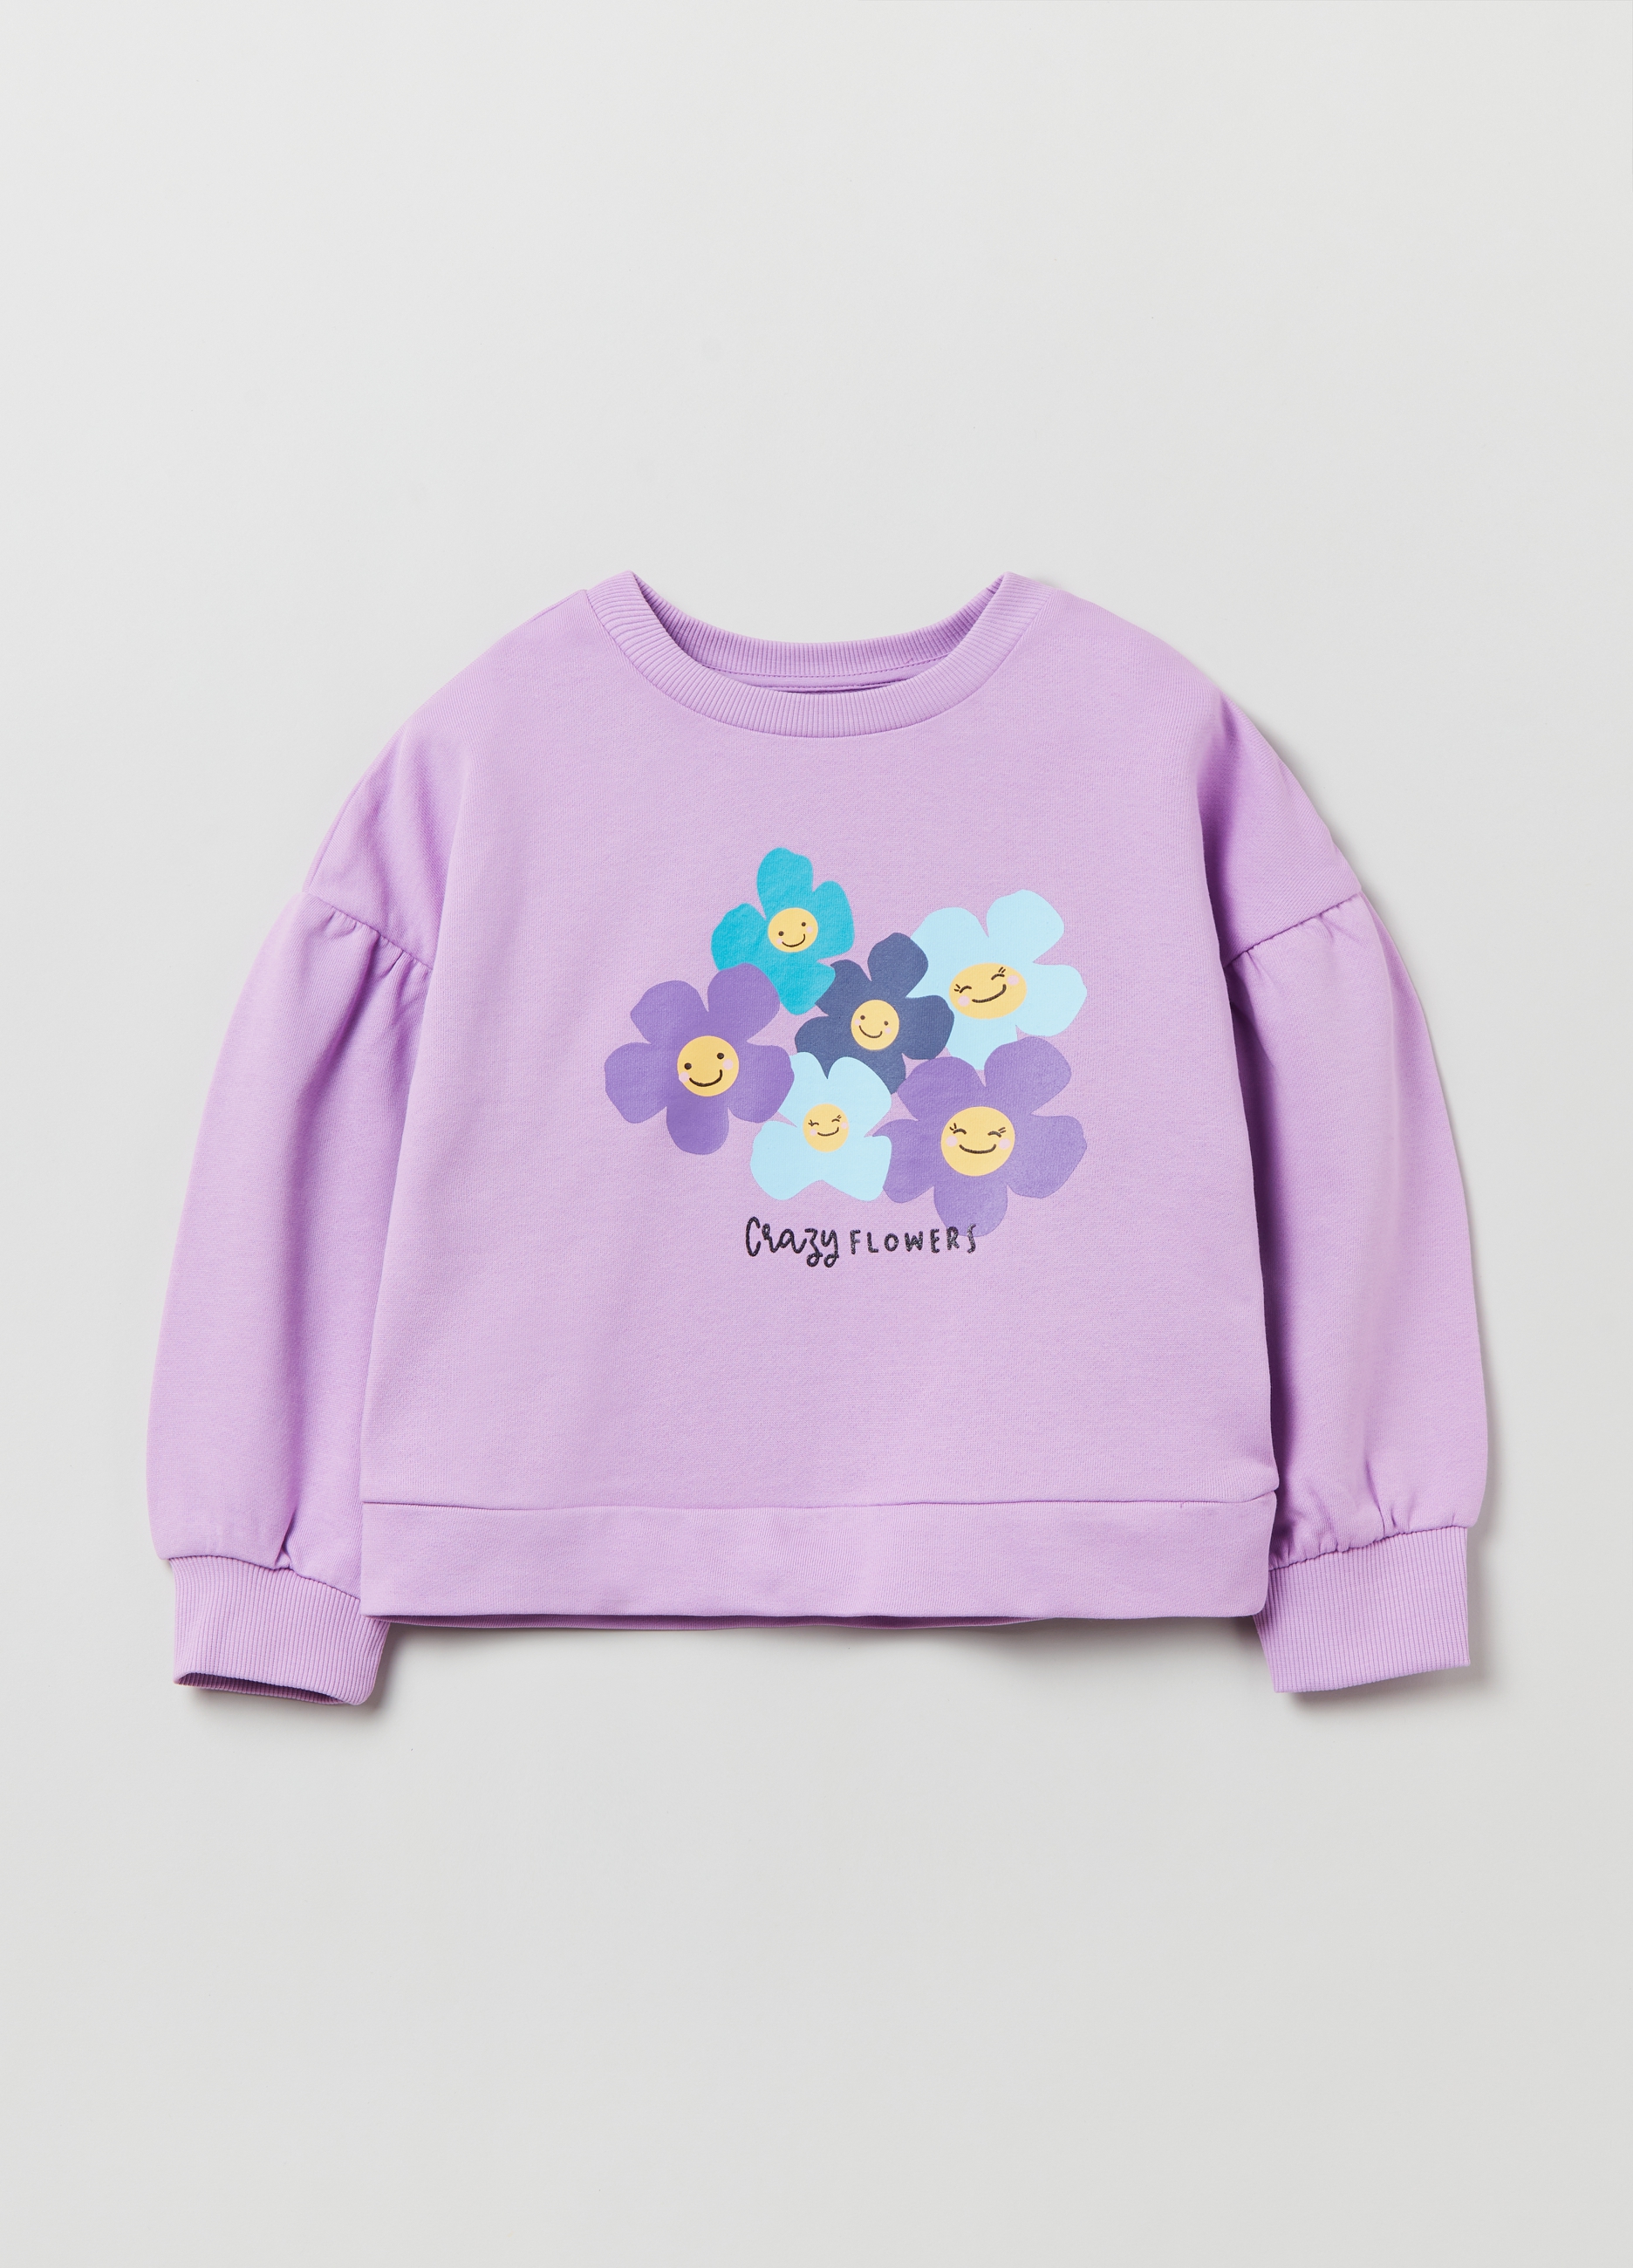 Фуфайка OVS для девочек, фиолетовая, 9-10 лет, 1893089 комплект трикотажный для девочек фуфайка футболка юбка шорты